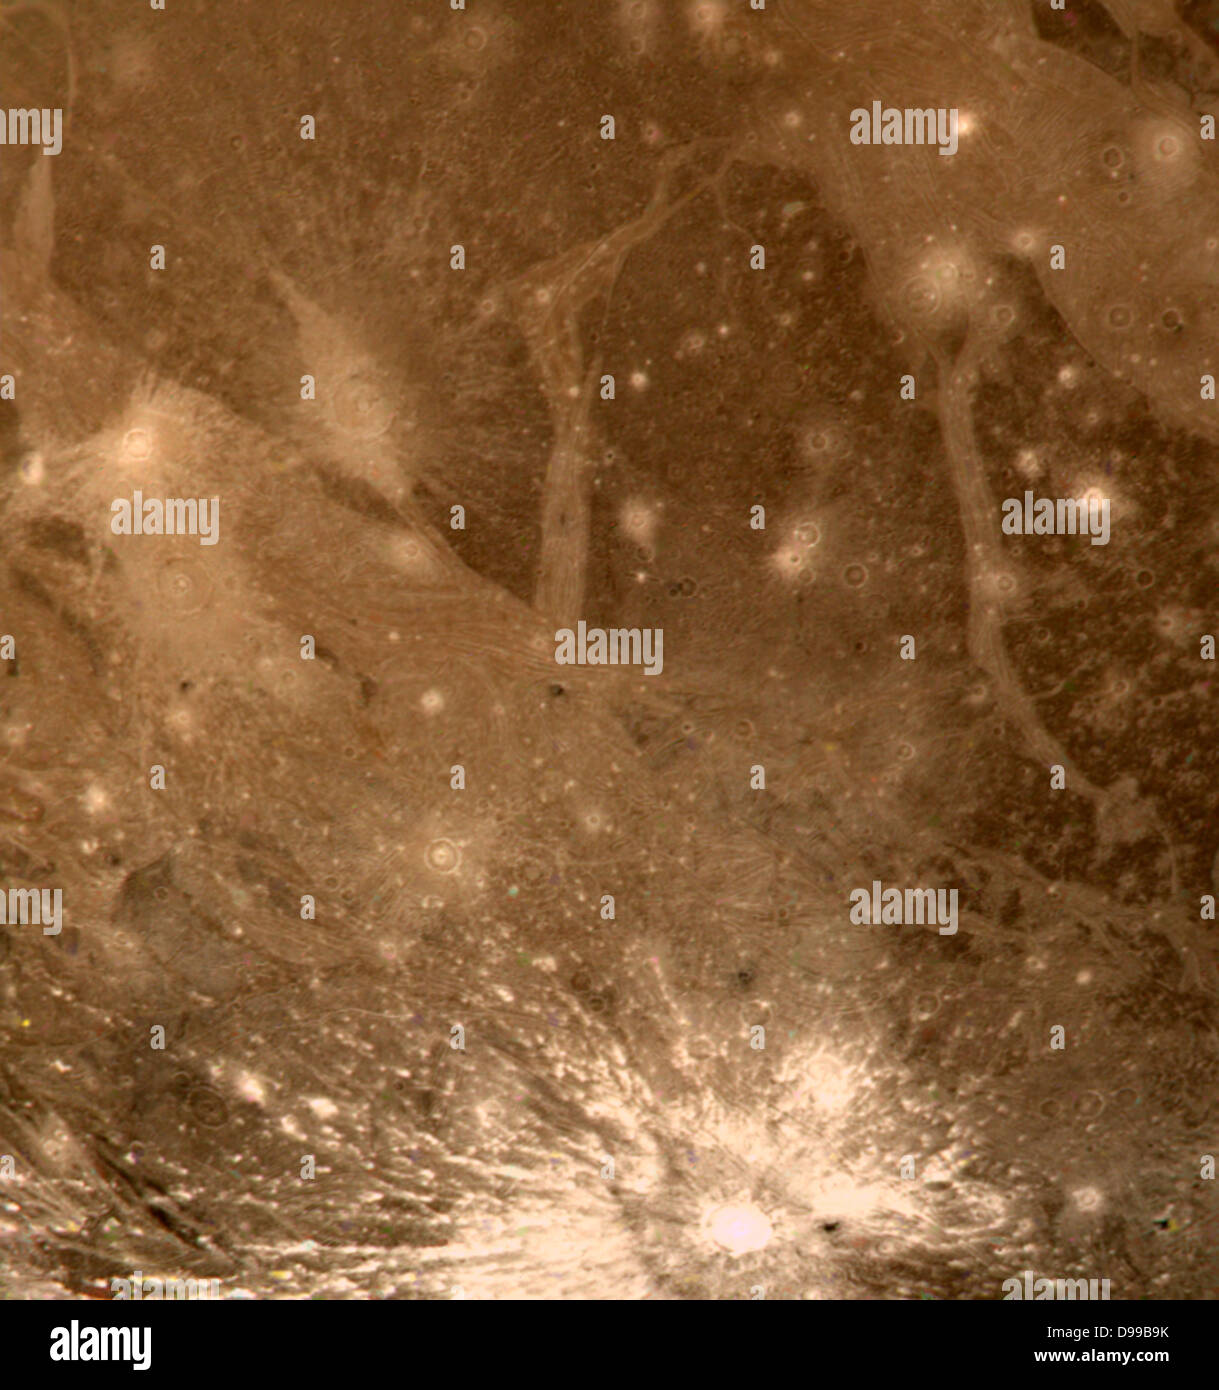 Ein Bild des Ganymed. Einer der Jupitermonde. Stockfoto